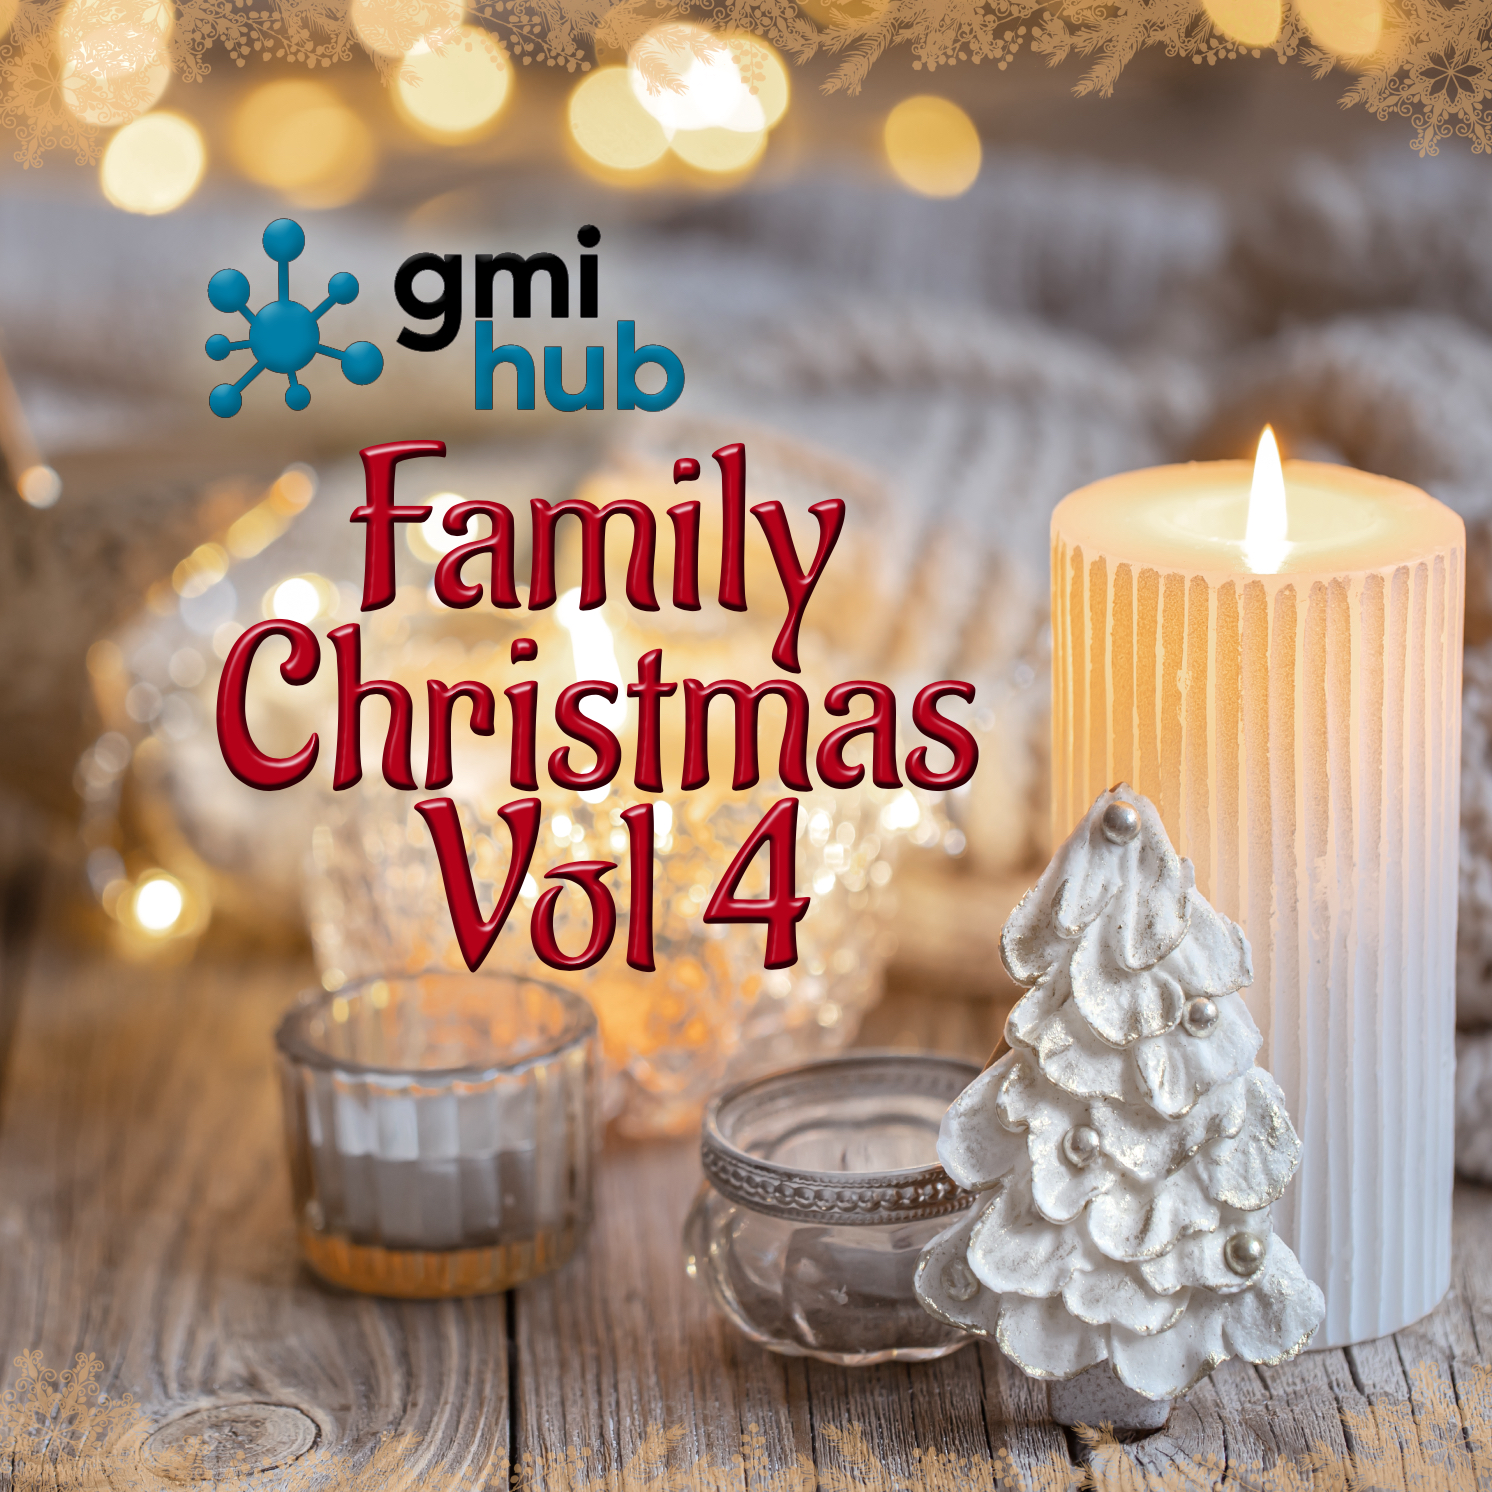 GMI HUb Family Christmas Vol 4 Album Cover